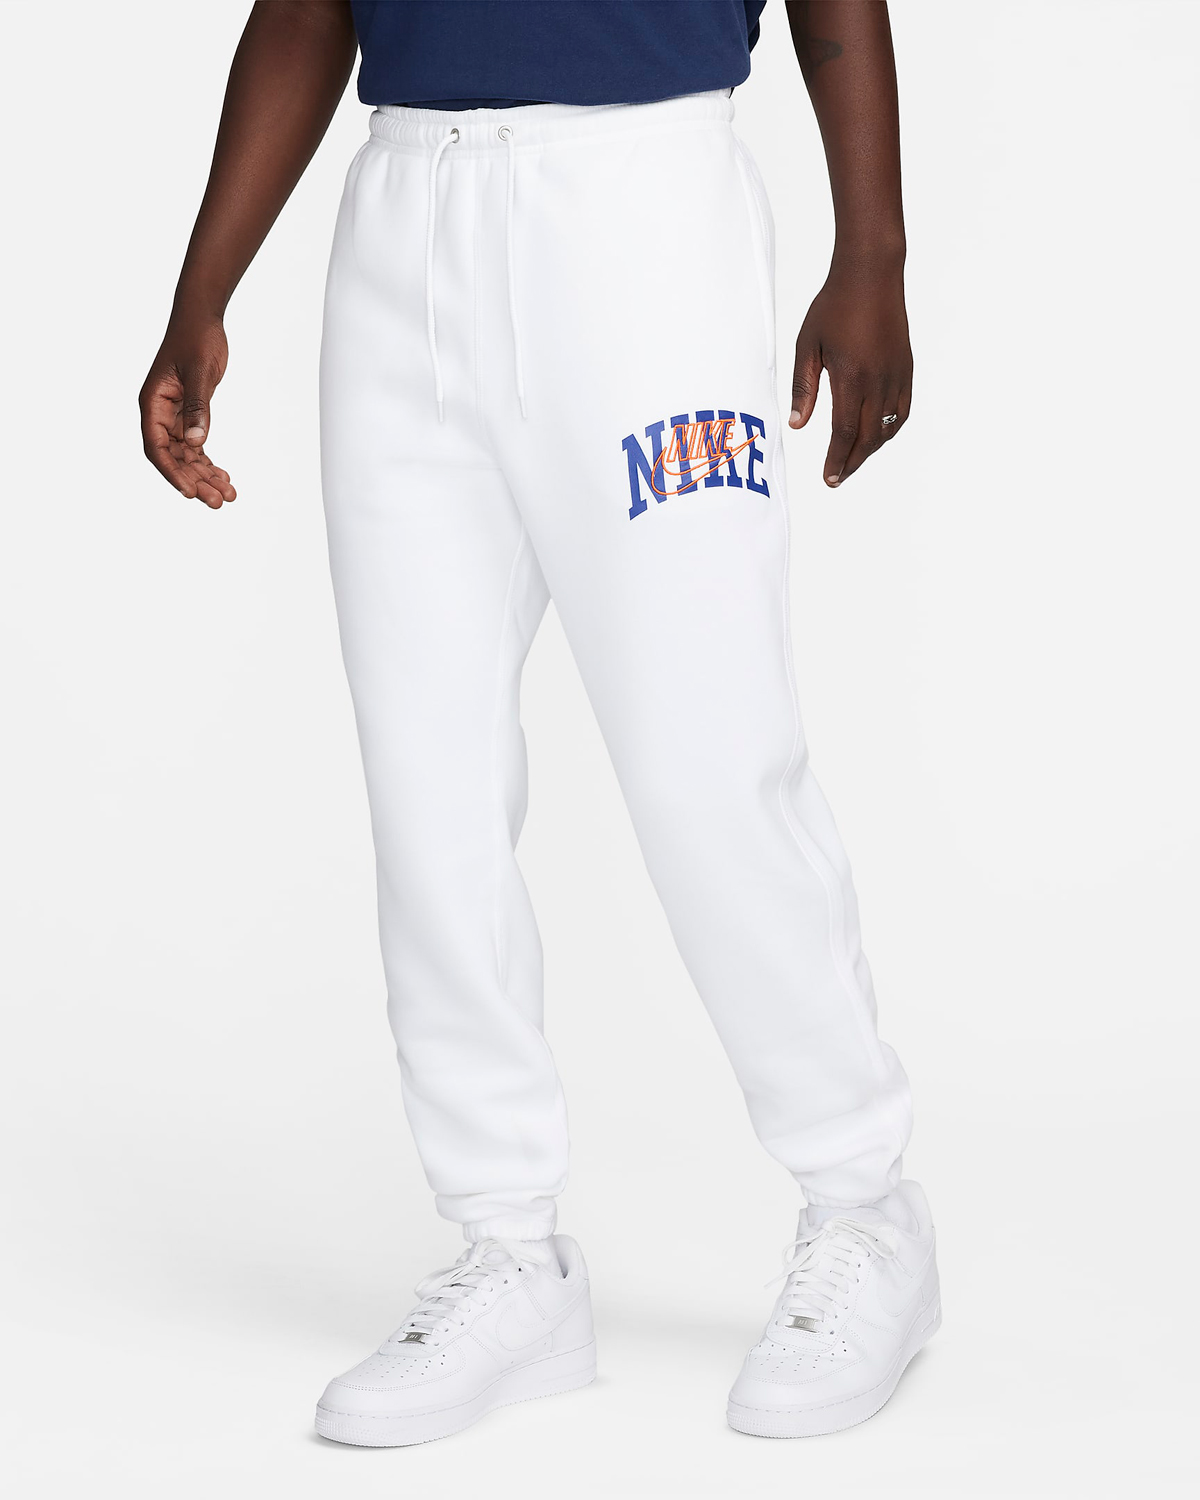 Nike-Club-Fleece-Pants-White-Royal-Blue-Orange-1